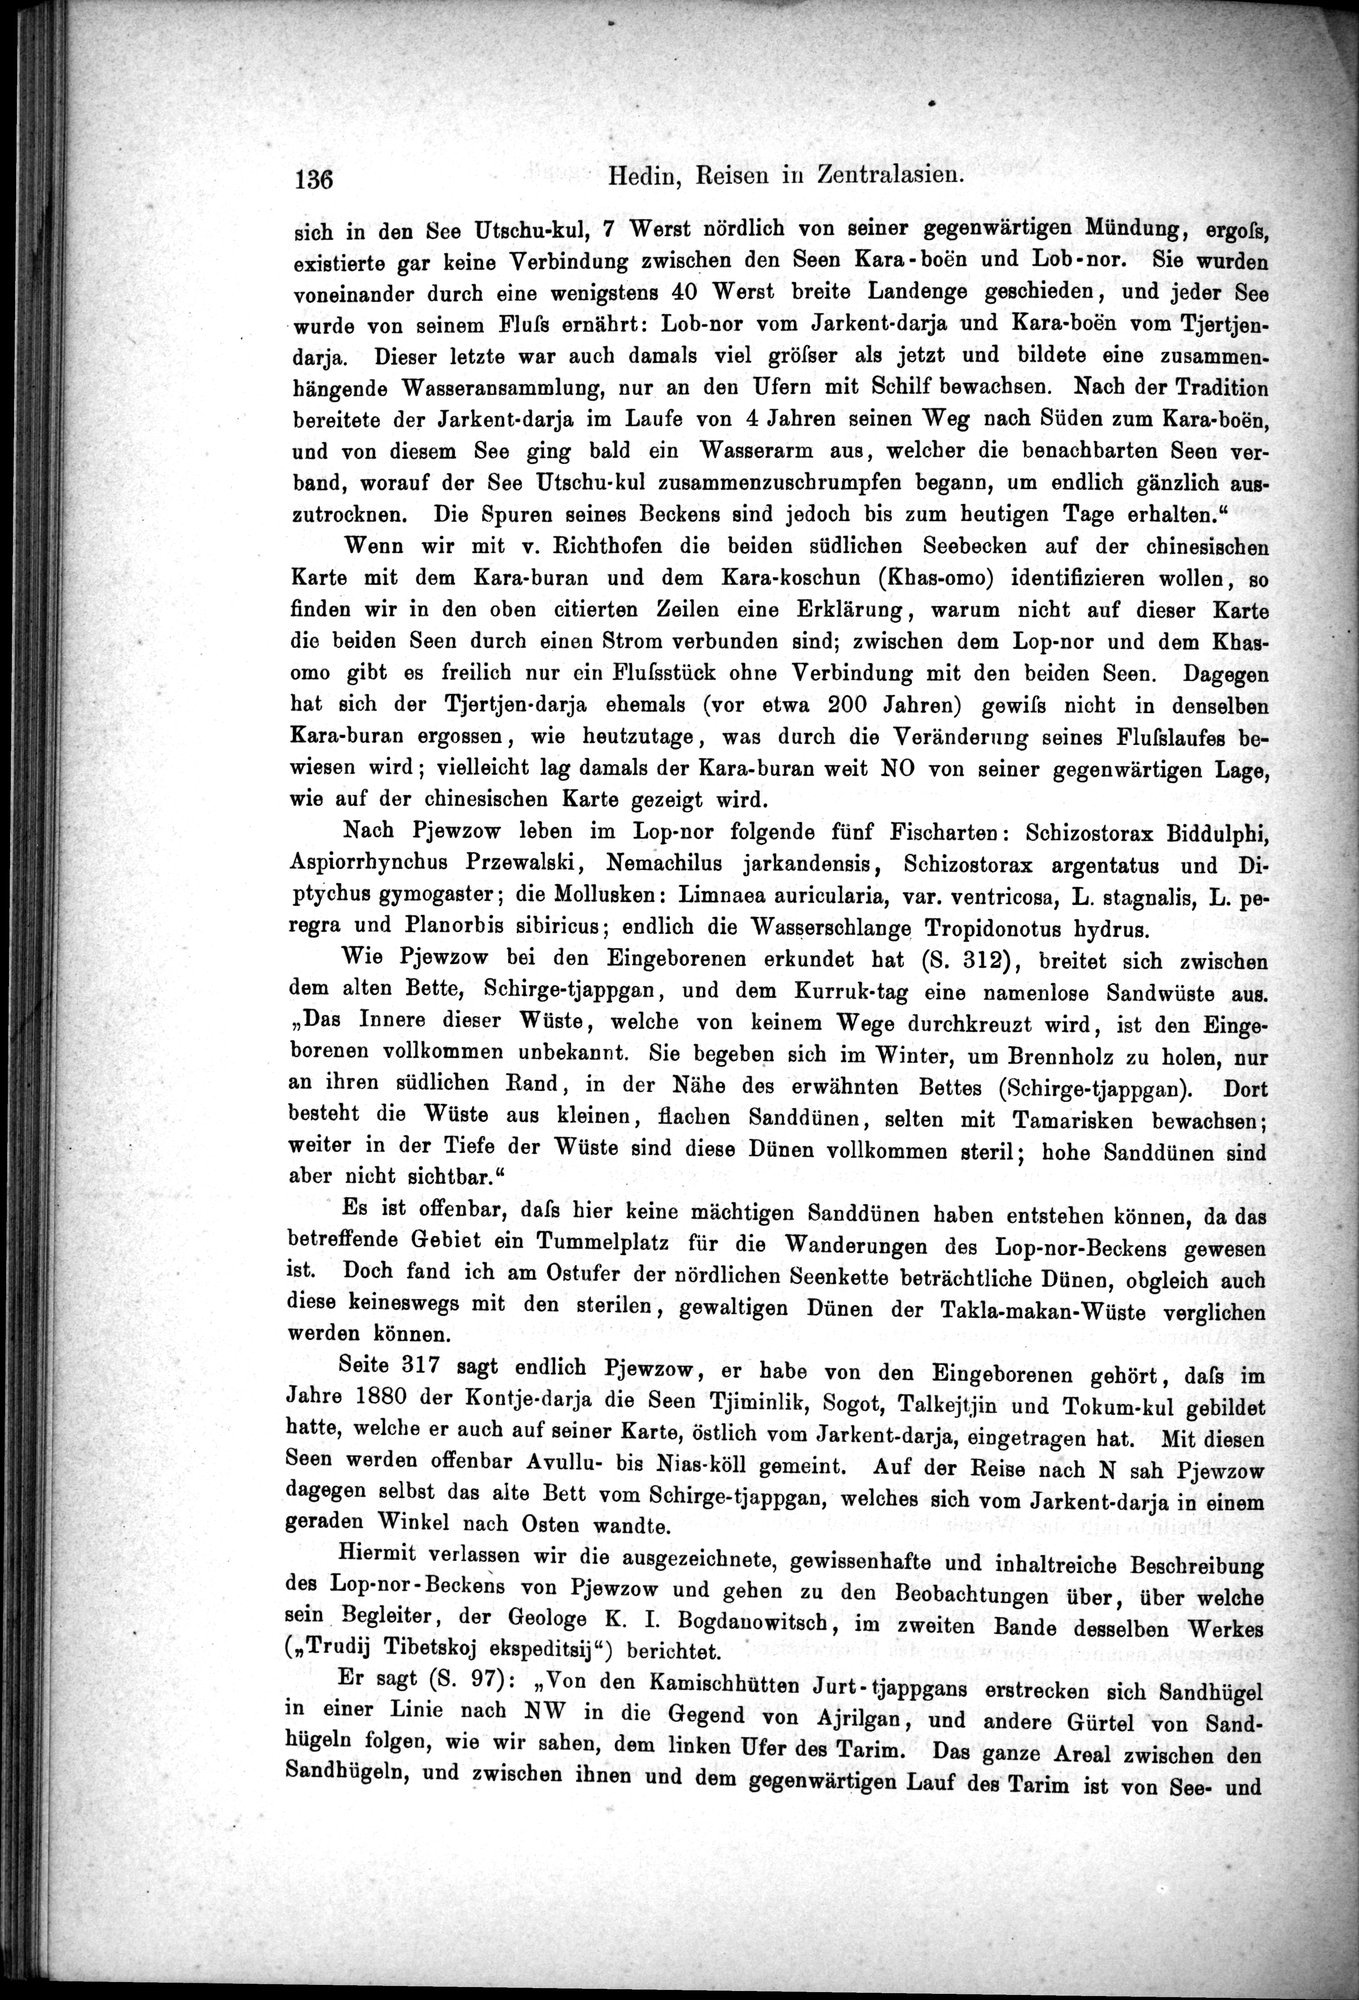 Die Geographische-Wissenschaftlichen Ergebnisse meiner Reisen in Zentralasien, 1894-1897 : vol.1 / Page 148 (Grayscale High Resolution Image)